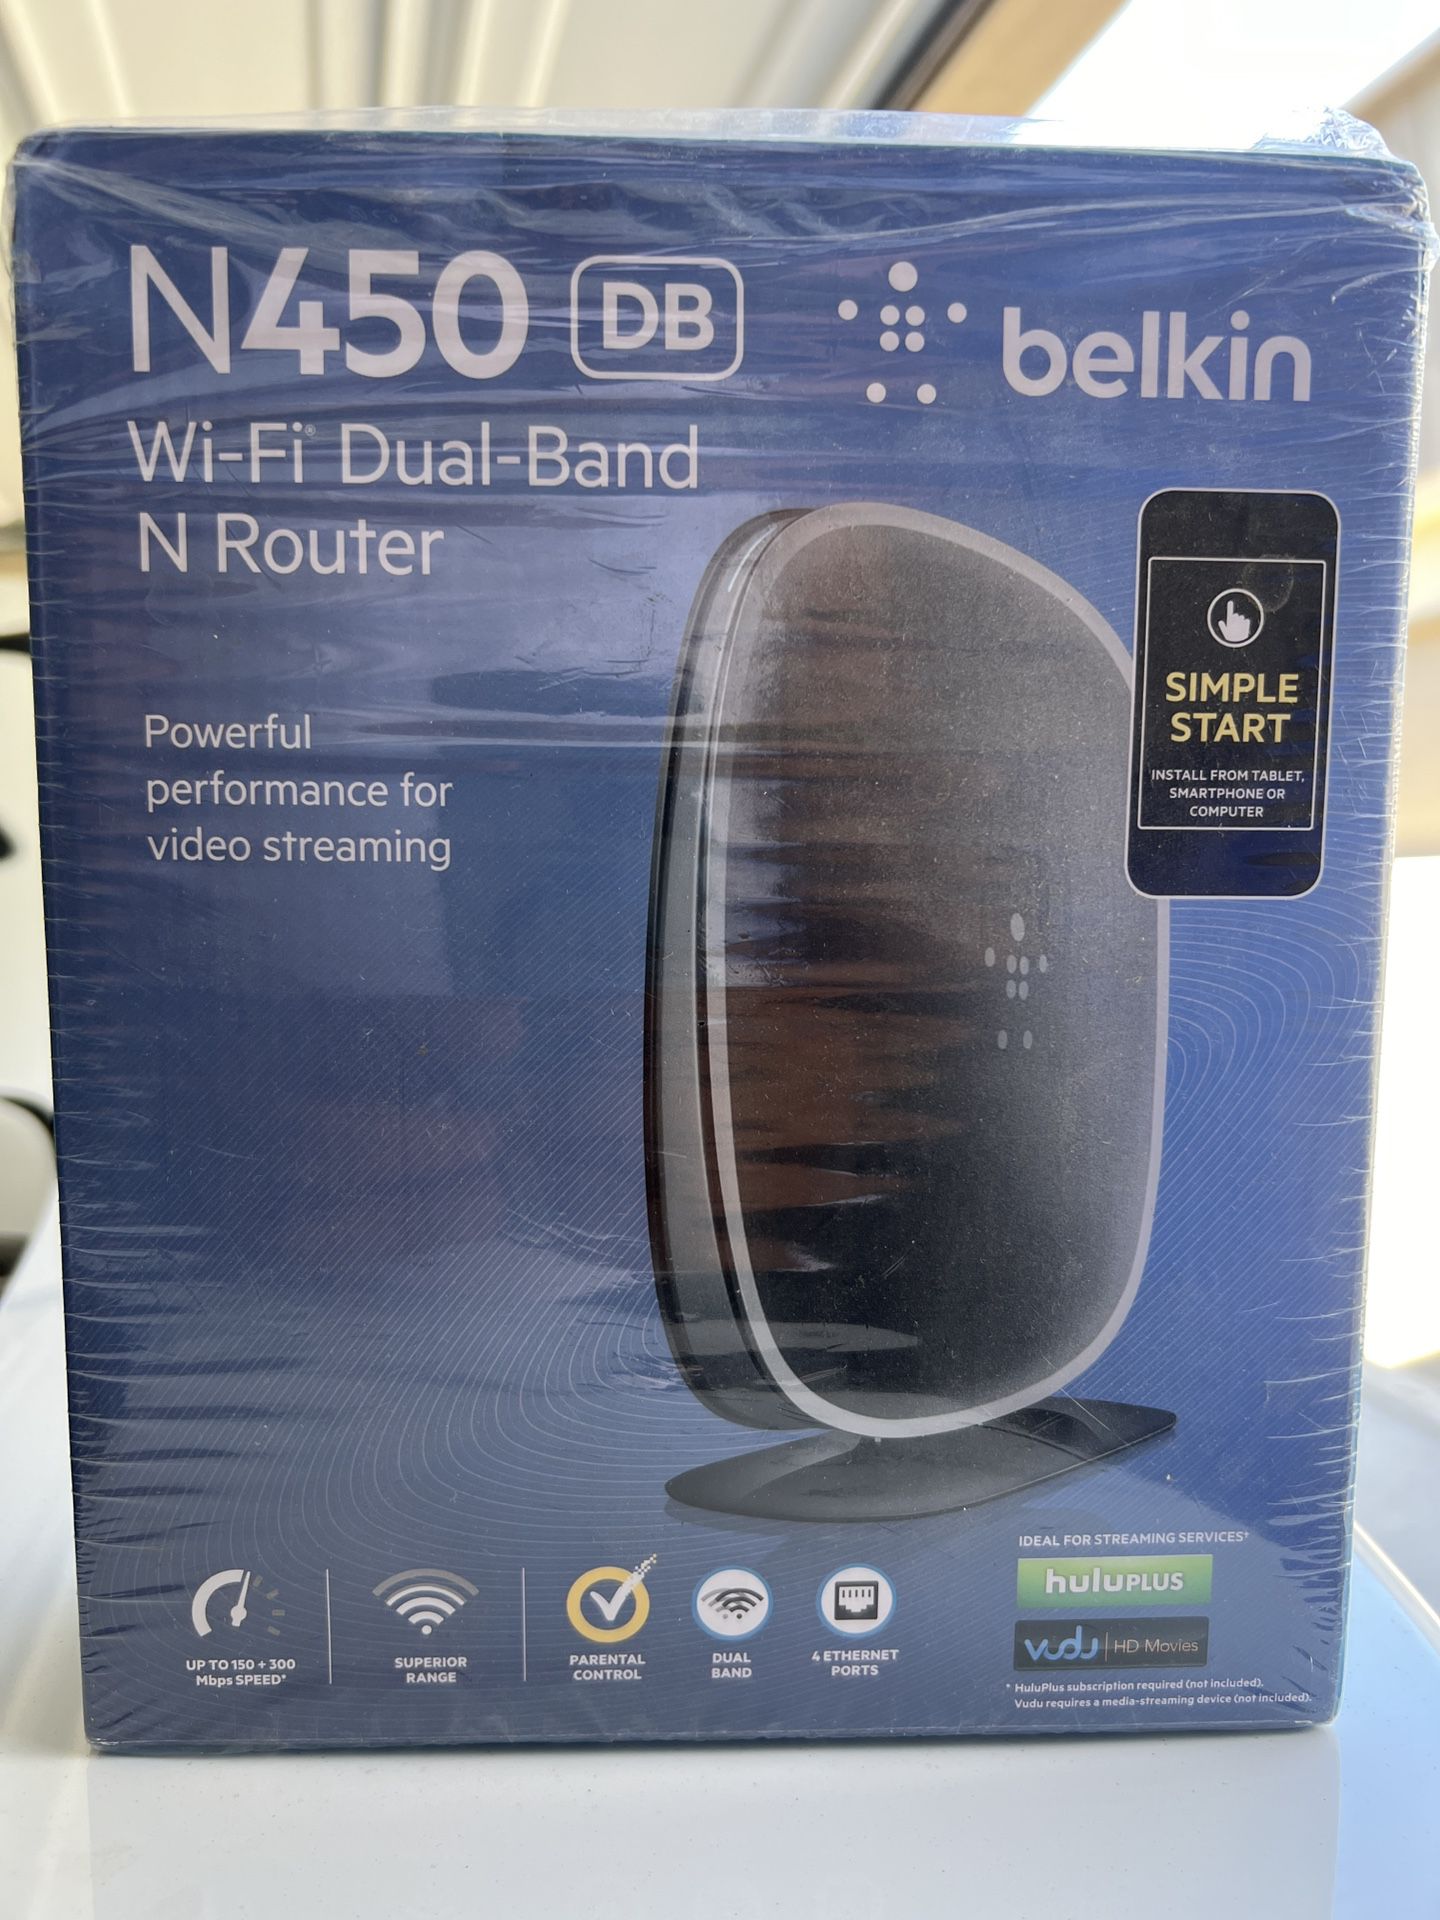 N450 DB belkin Wi-Fi Dual-Band N Router